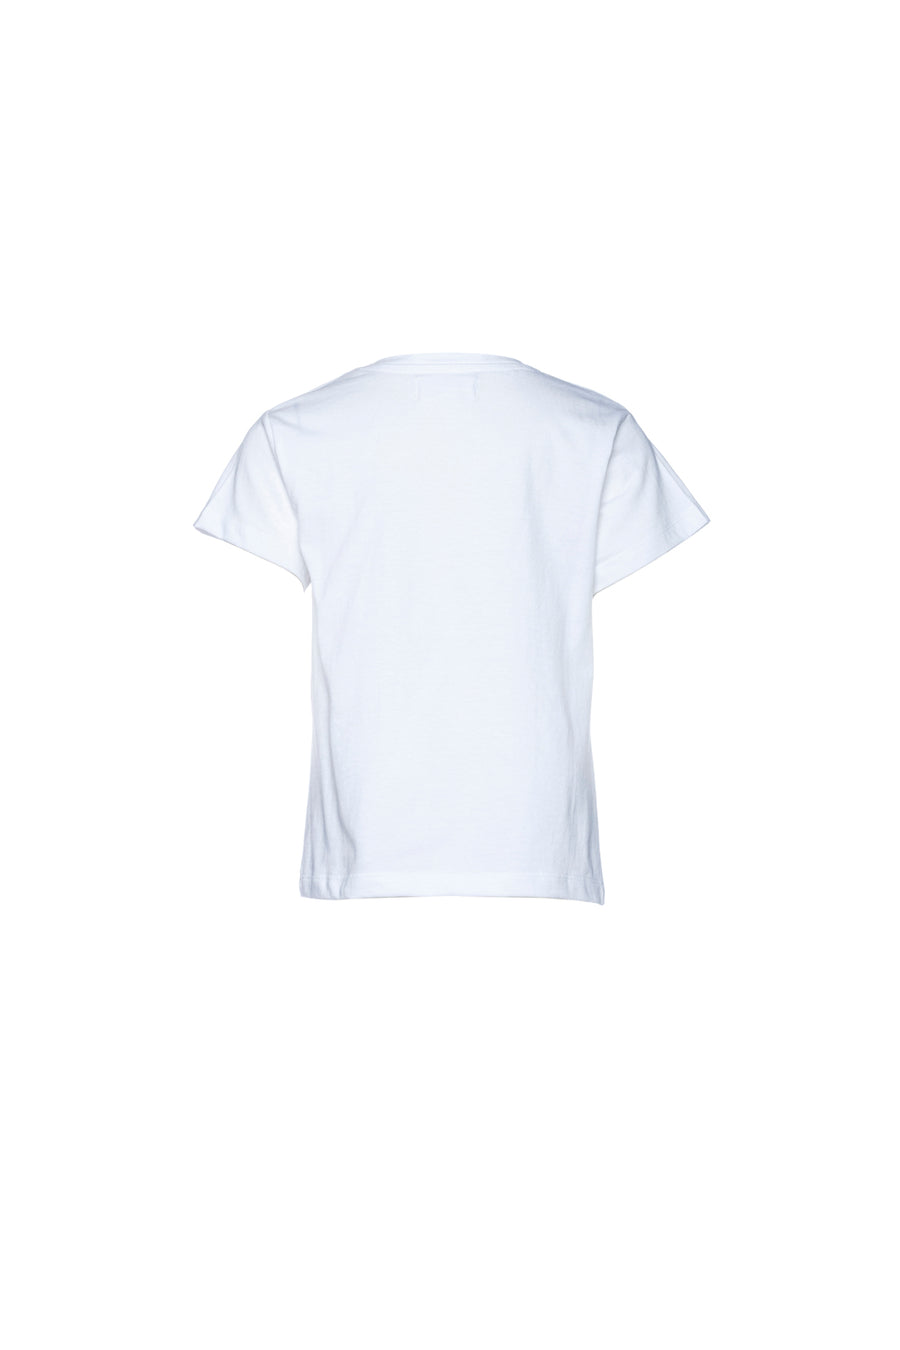 T-shirt de decote redondo com estampado alusivo ao Dia do Pai e manga curta.